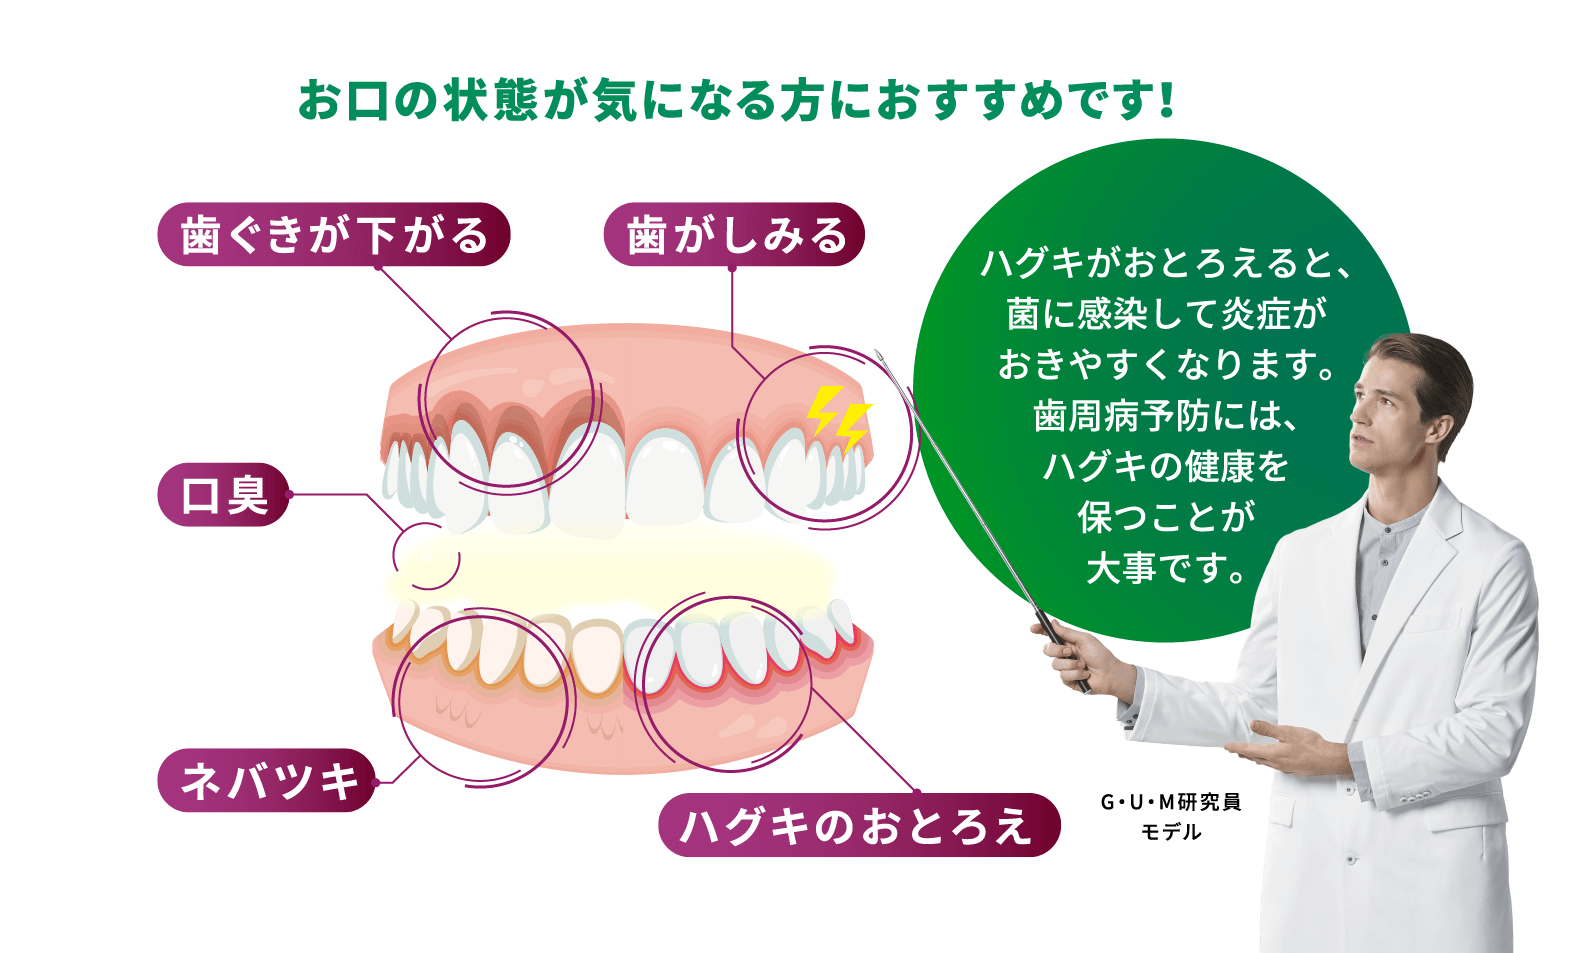 お口の状態が気になる方におすすめです！ 歯ぐきが下がる 歯がしみる 口臭 ネバツキ ハグキのおとろえ ハグキがおとろえると、菌に感染して炎症がおきやすくなります。歯周病予防には、ハグキの健康を保つことが大事です。 G・U・M研究員モデル